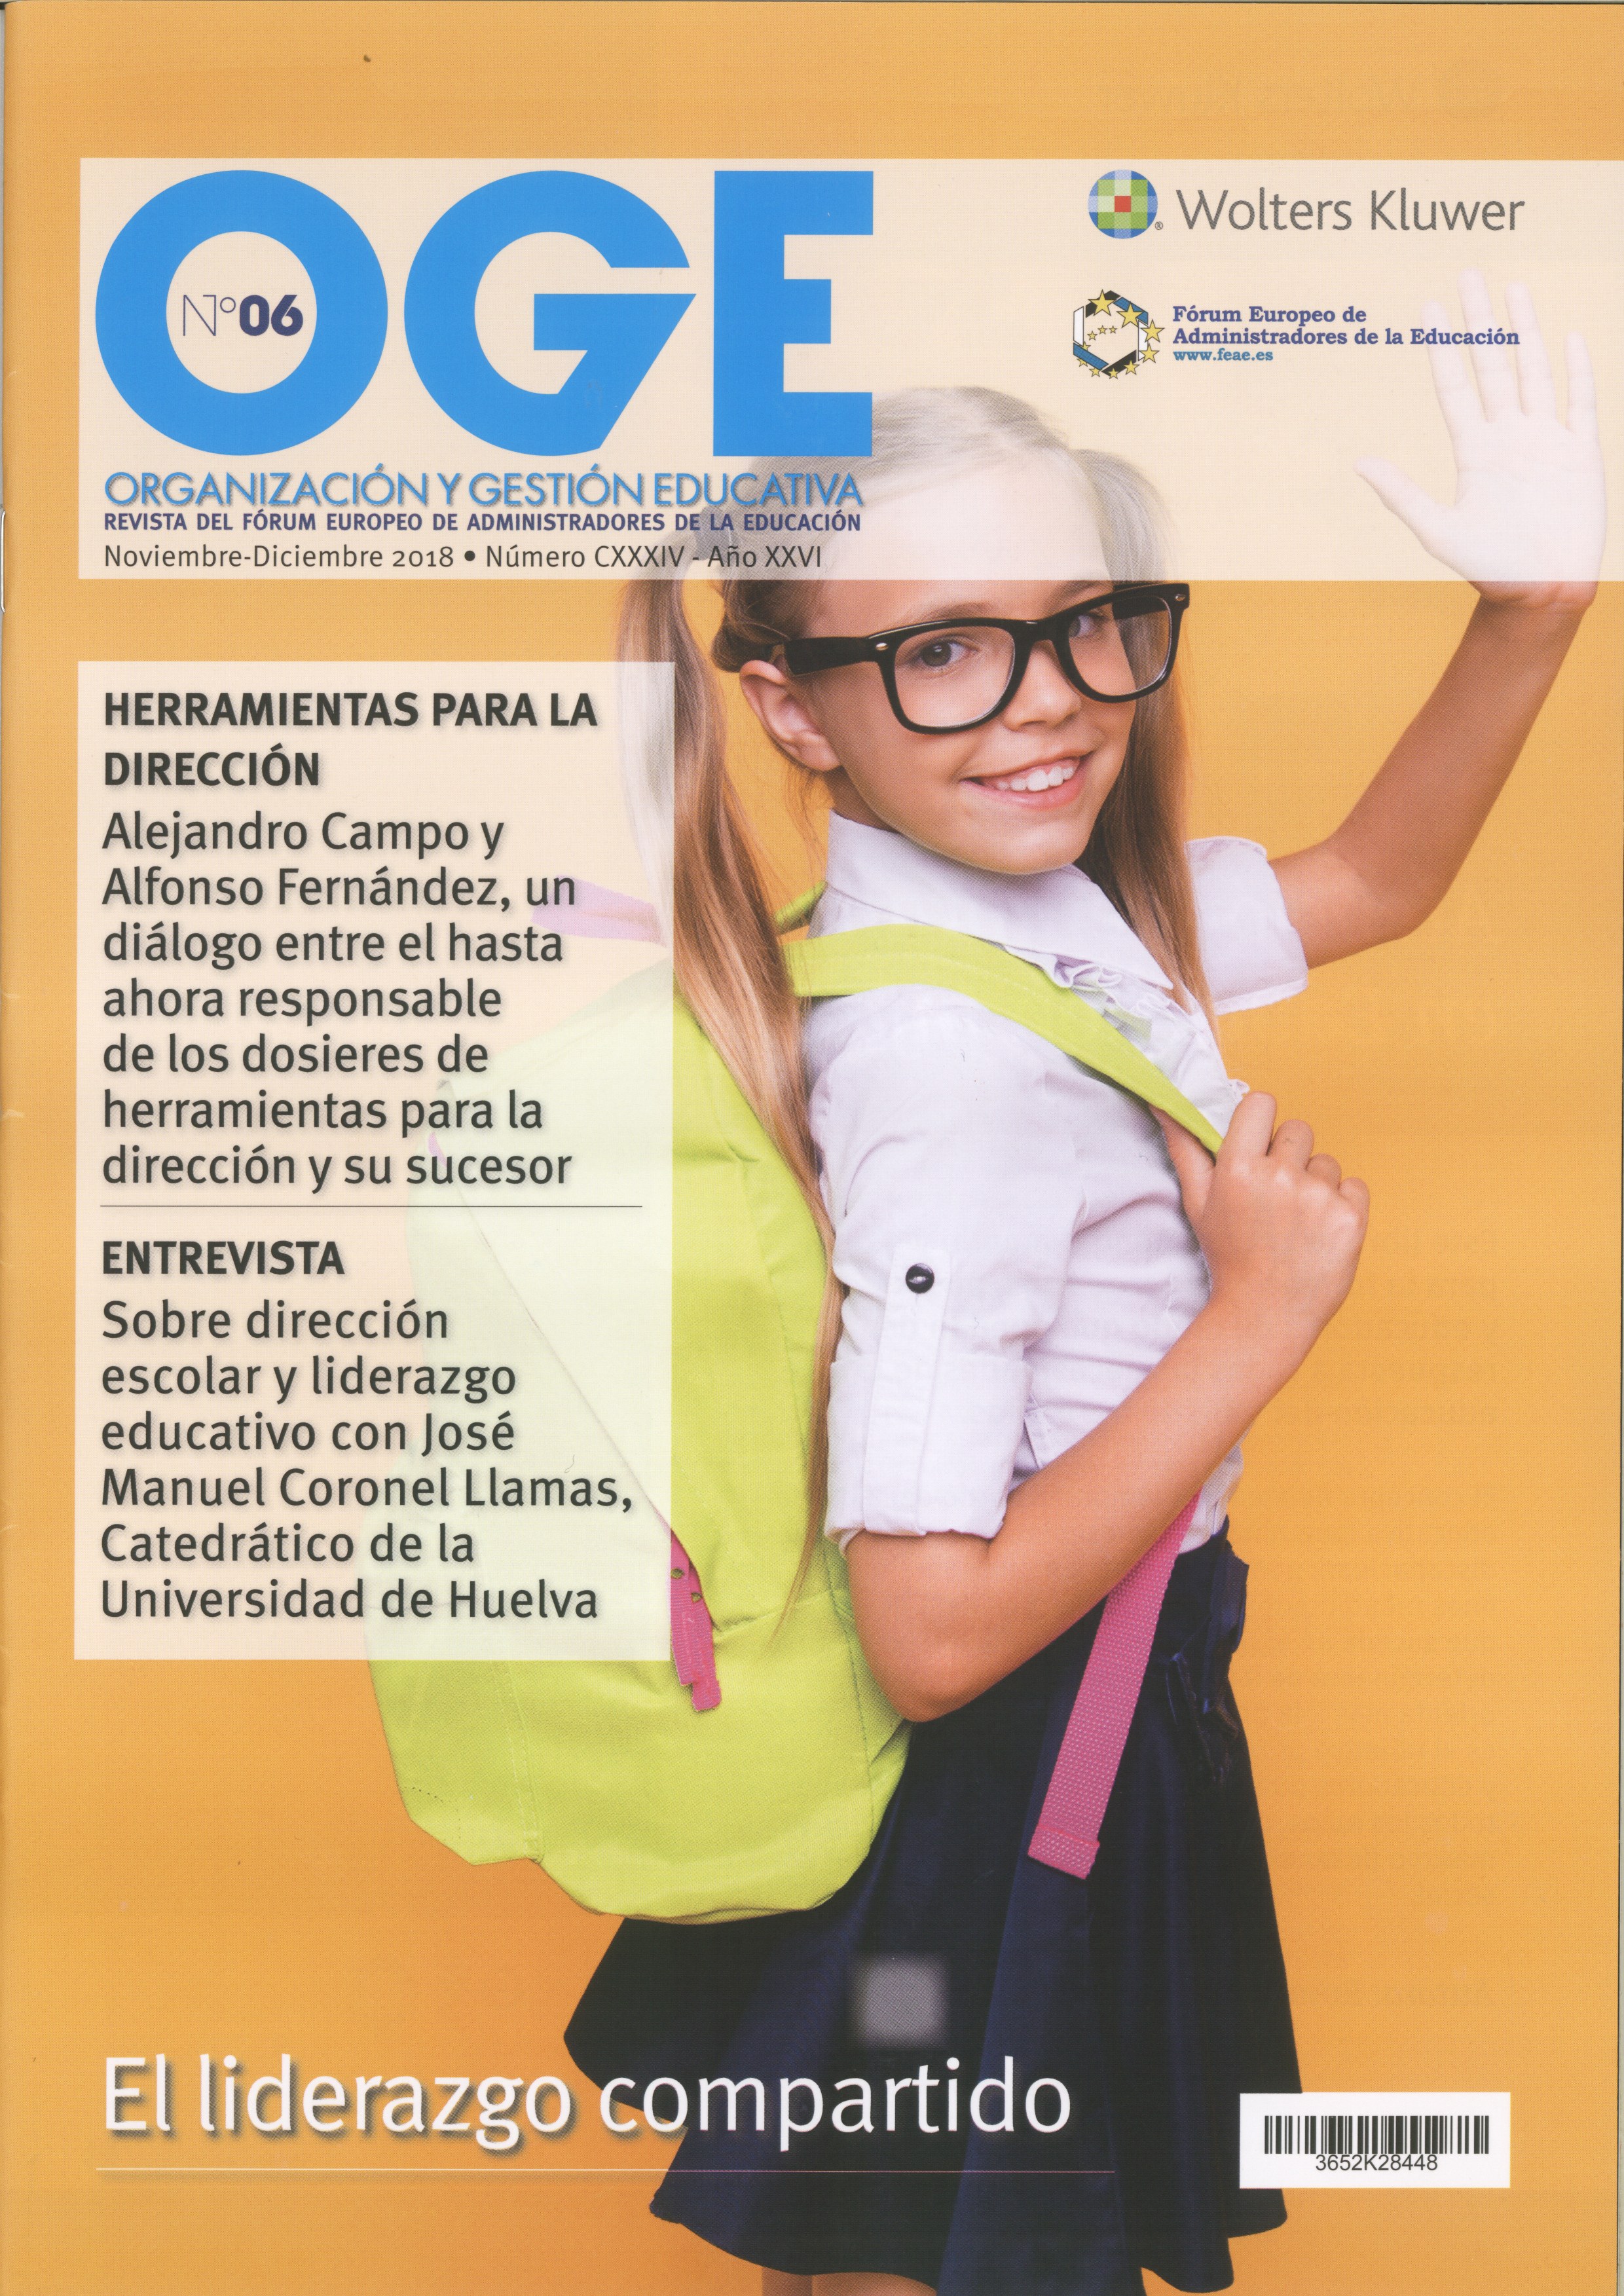 OGE: Organización y Gestión Educativa